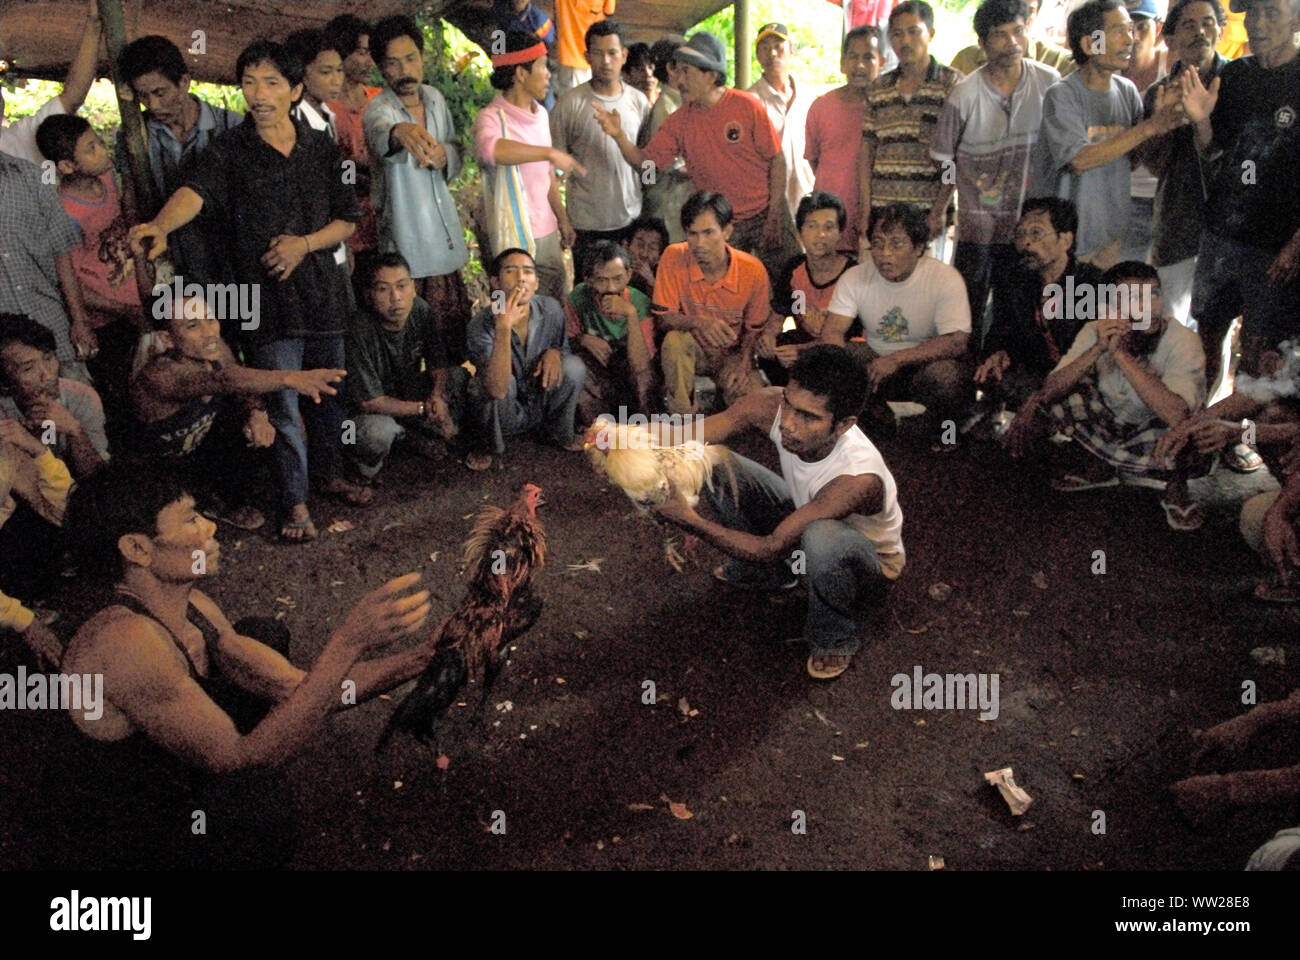 Hahn kämpfen Bali Indonesien. Gruppe der balinesischen Männer in ländlichen Gemeinschaft spielen auf Hahn kämpfen. Zwei Hähne gezeigt, so Sie sind aggressiv. Lovina. Insel Bali 2000 s HOMER SYKES. Stockfoto